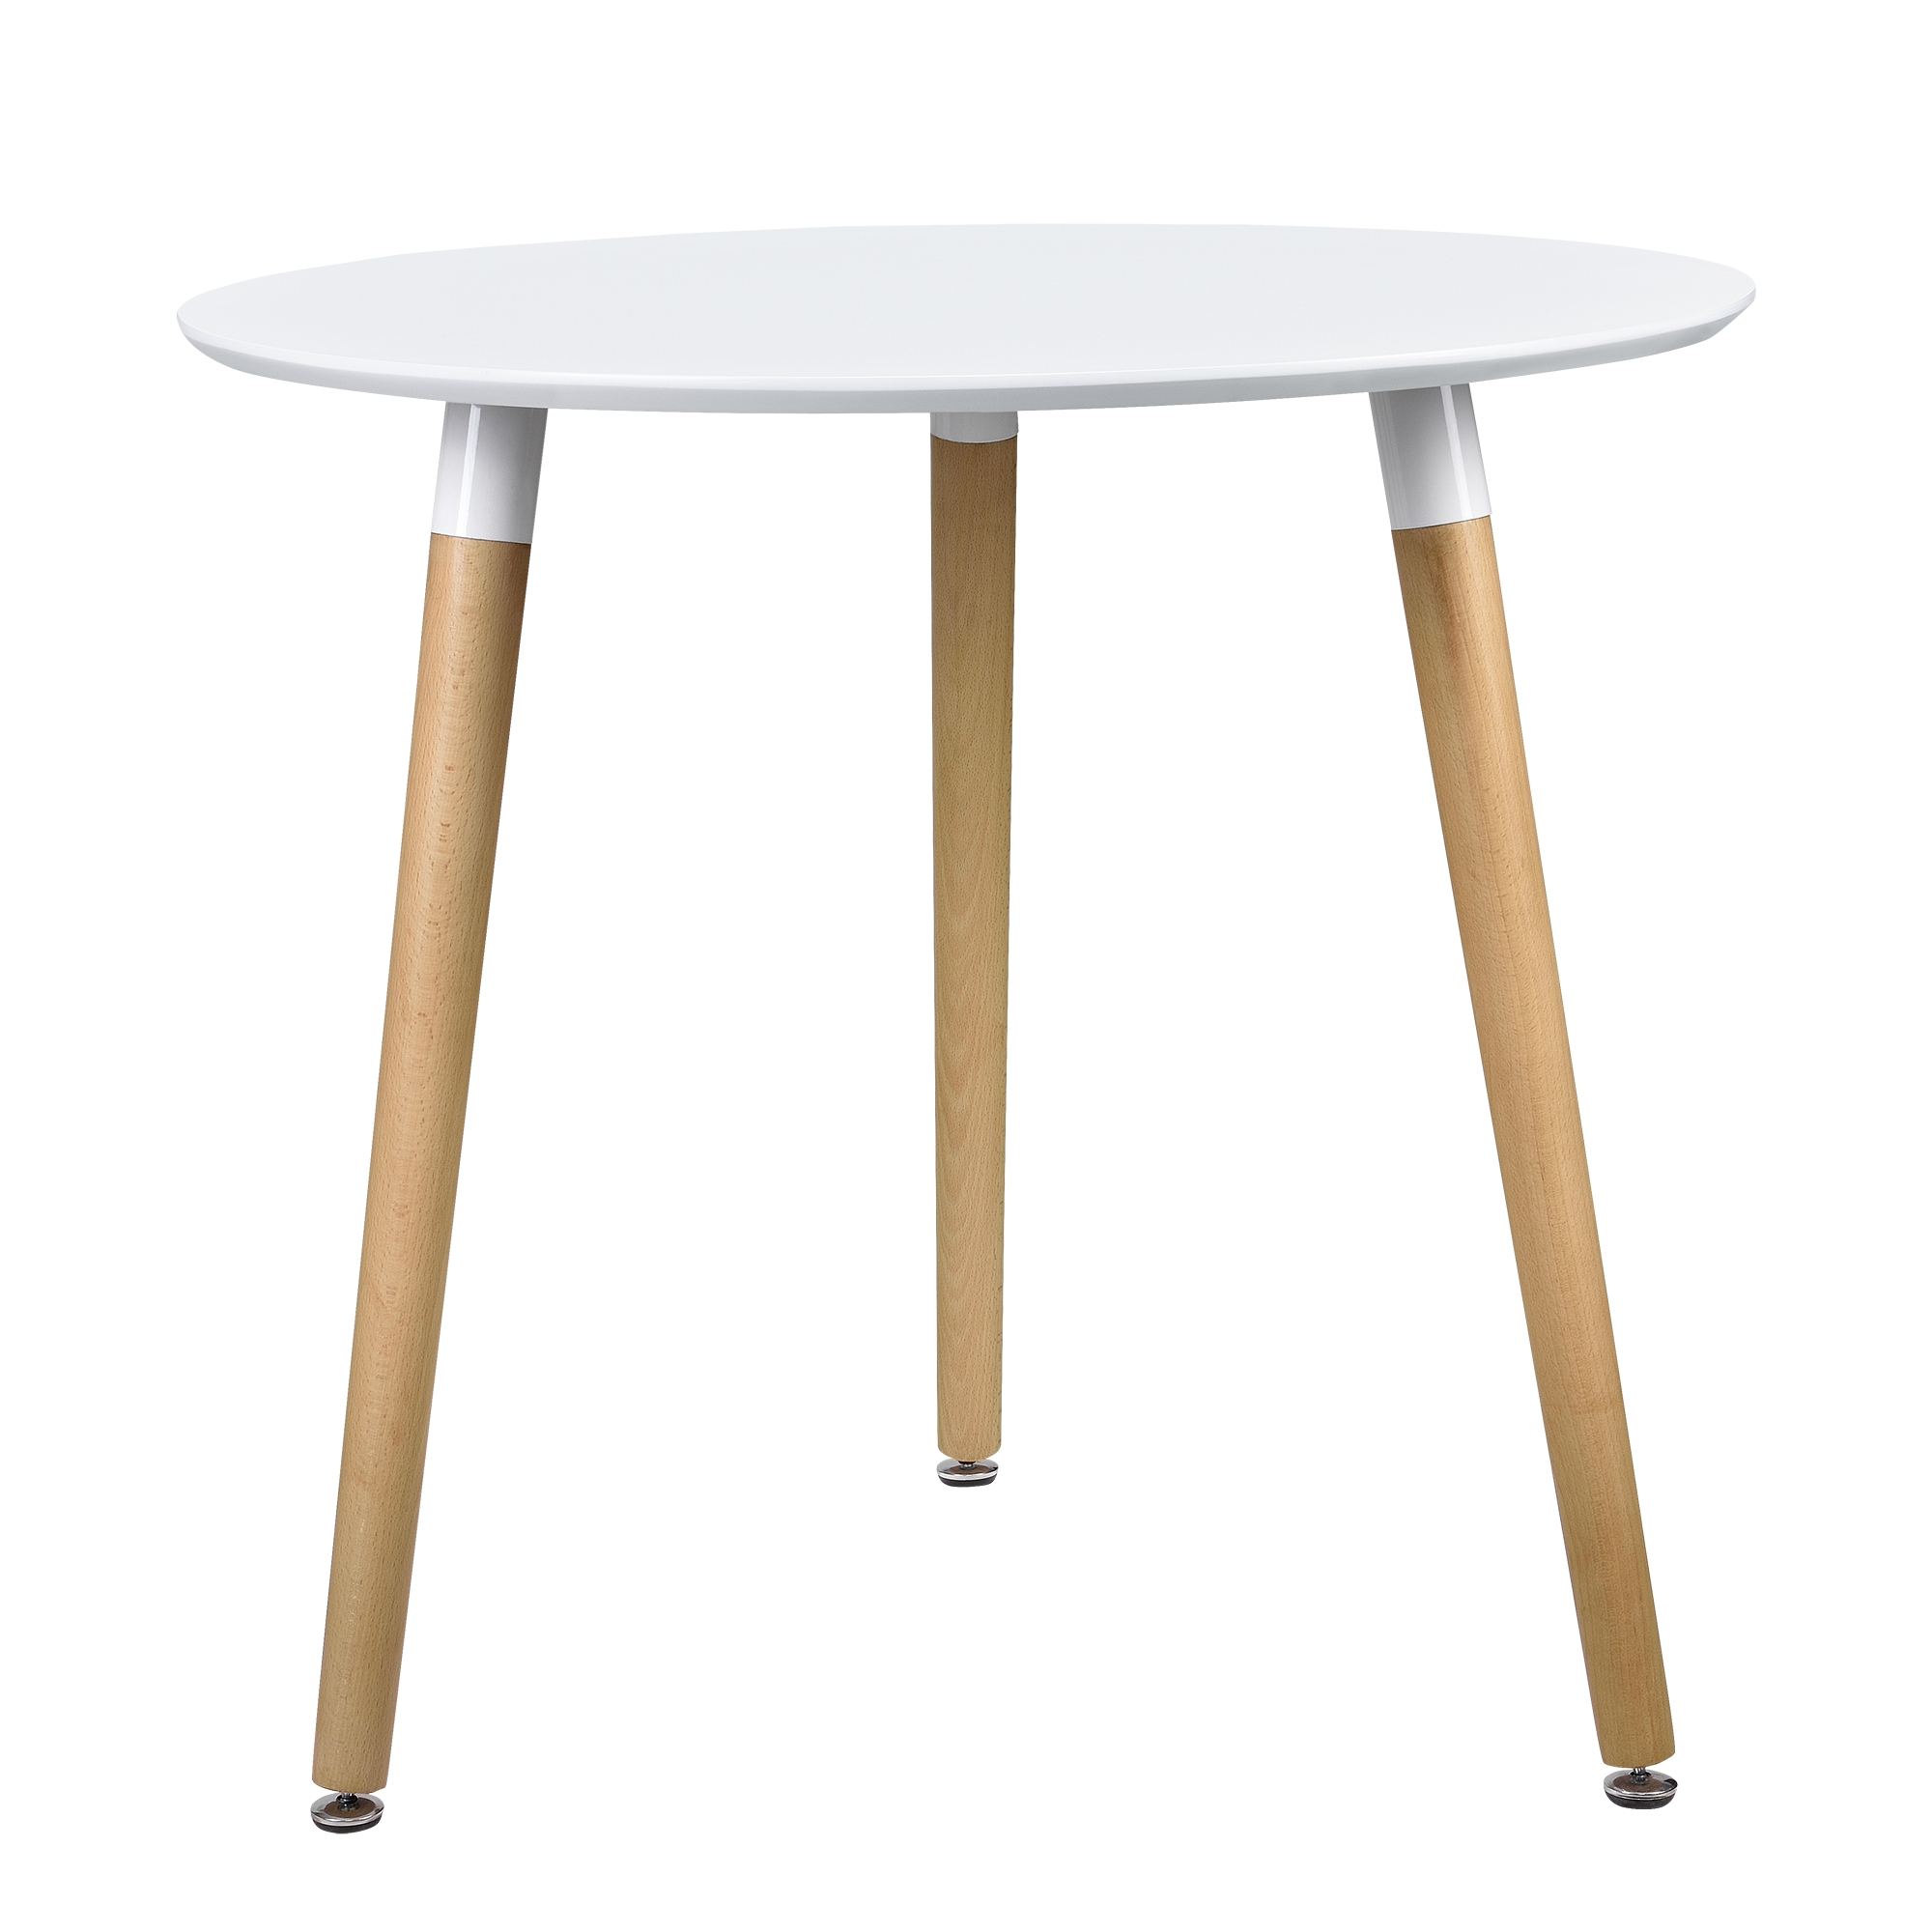 [en.casa] Esstisch Rund Weiß [H:75cmxØ80cm] Holz Tisch Retro-Design